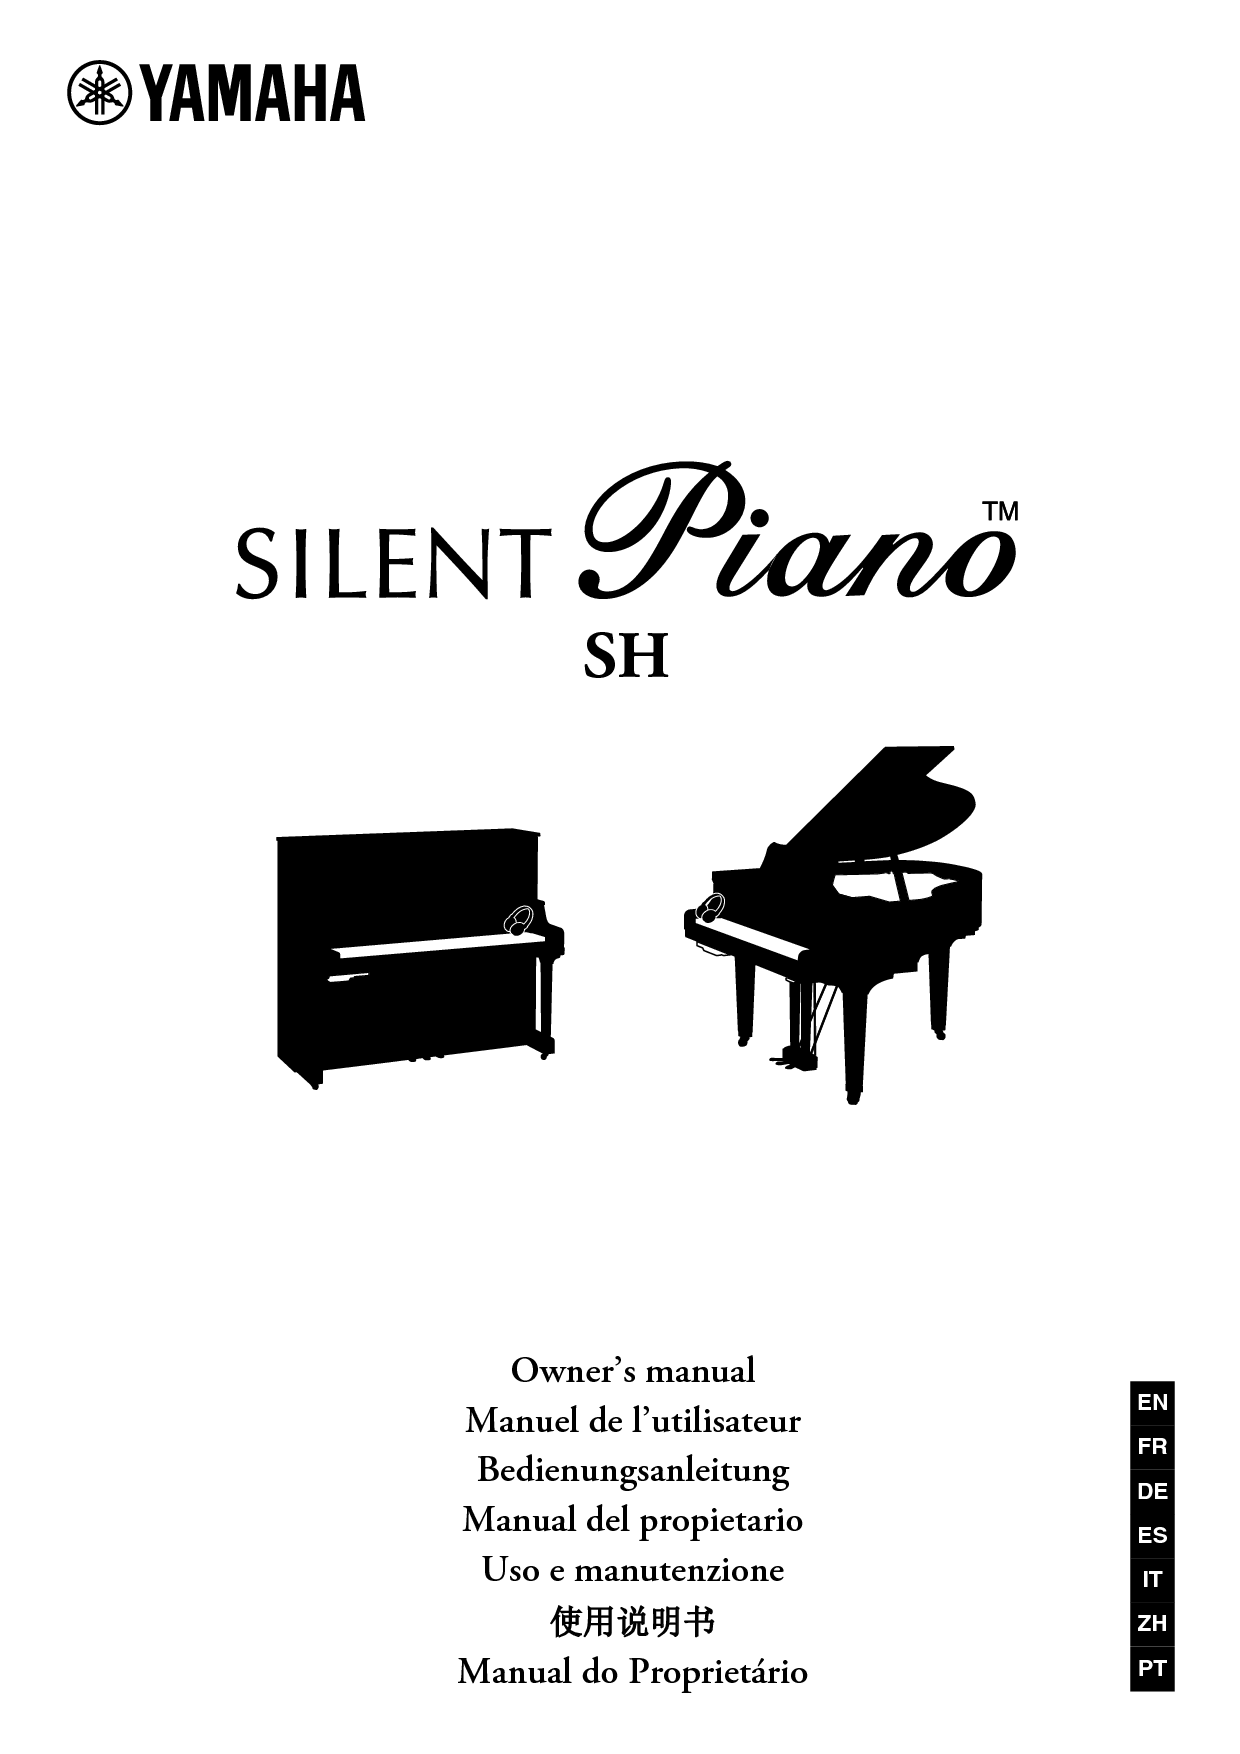 雅马哈 Yamaha Silent Piano SH 使用说明书 封面